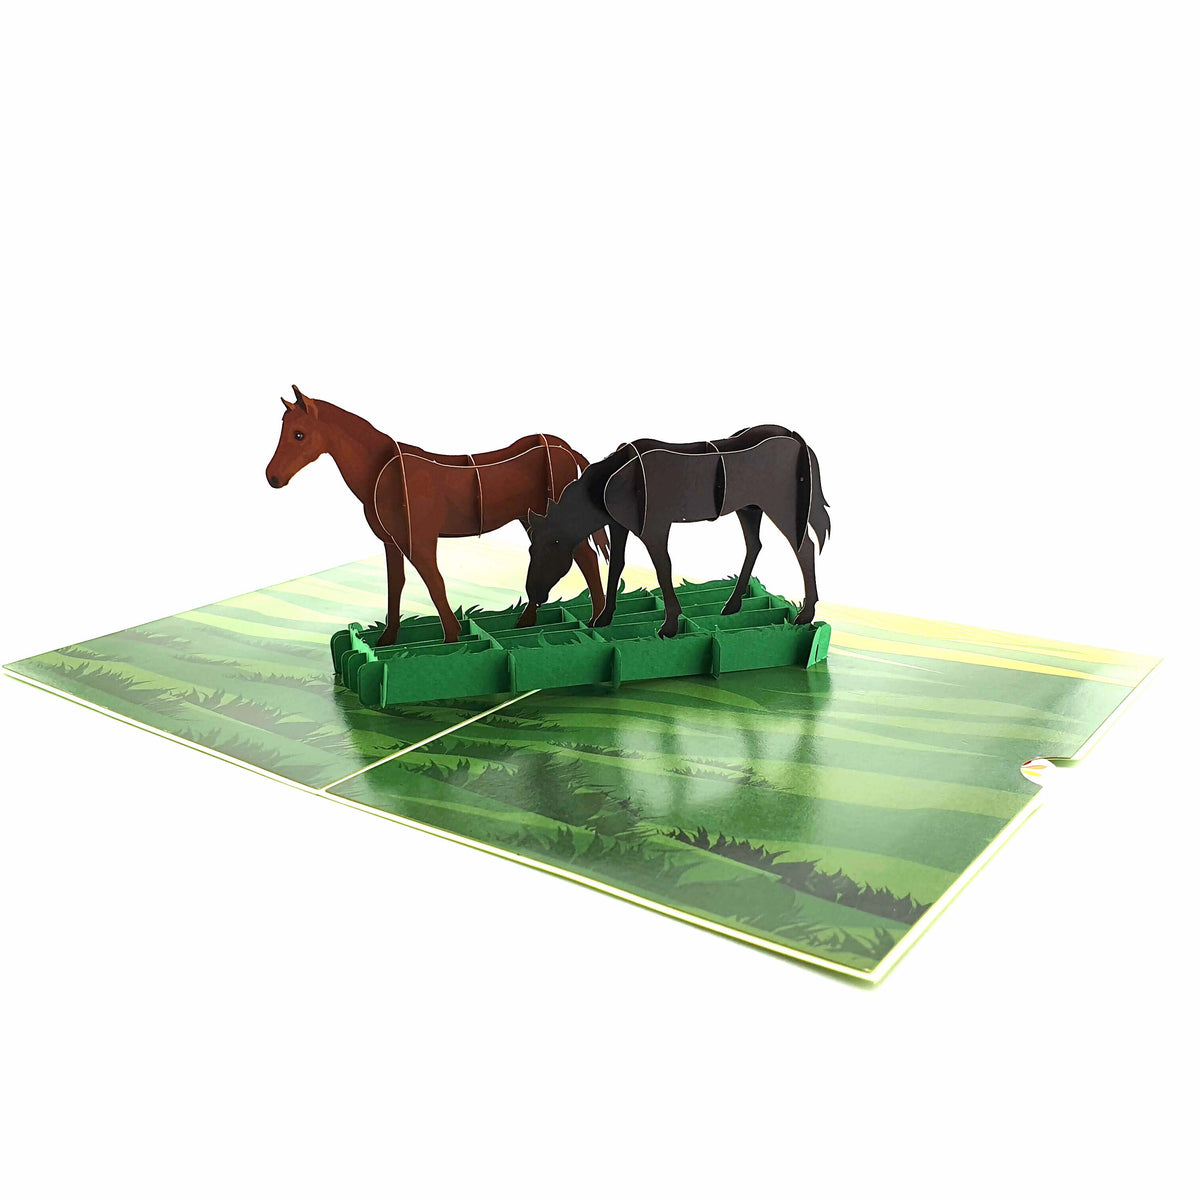 Horses Pop Up Card